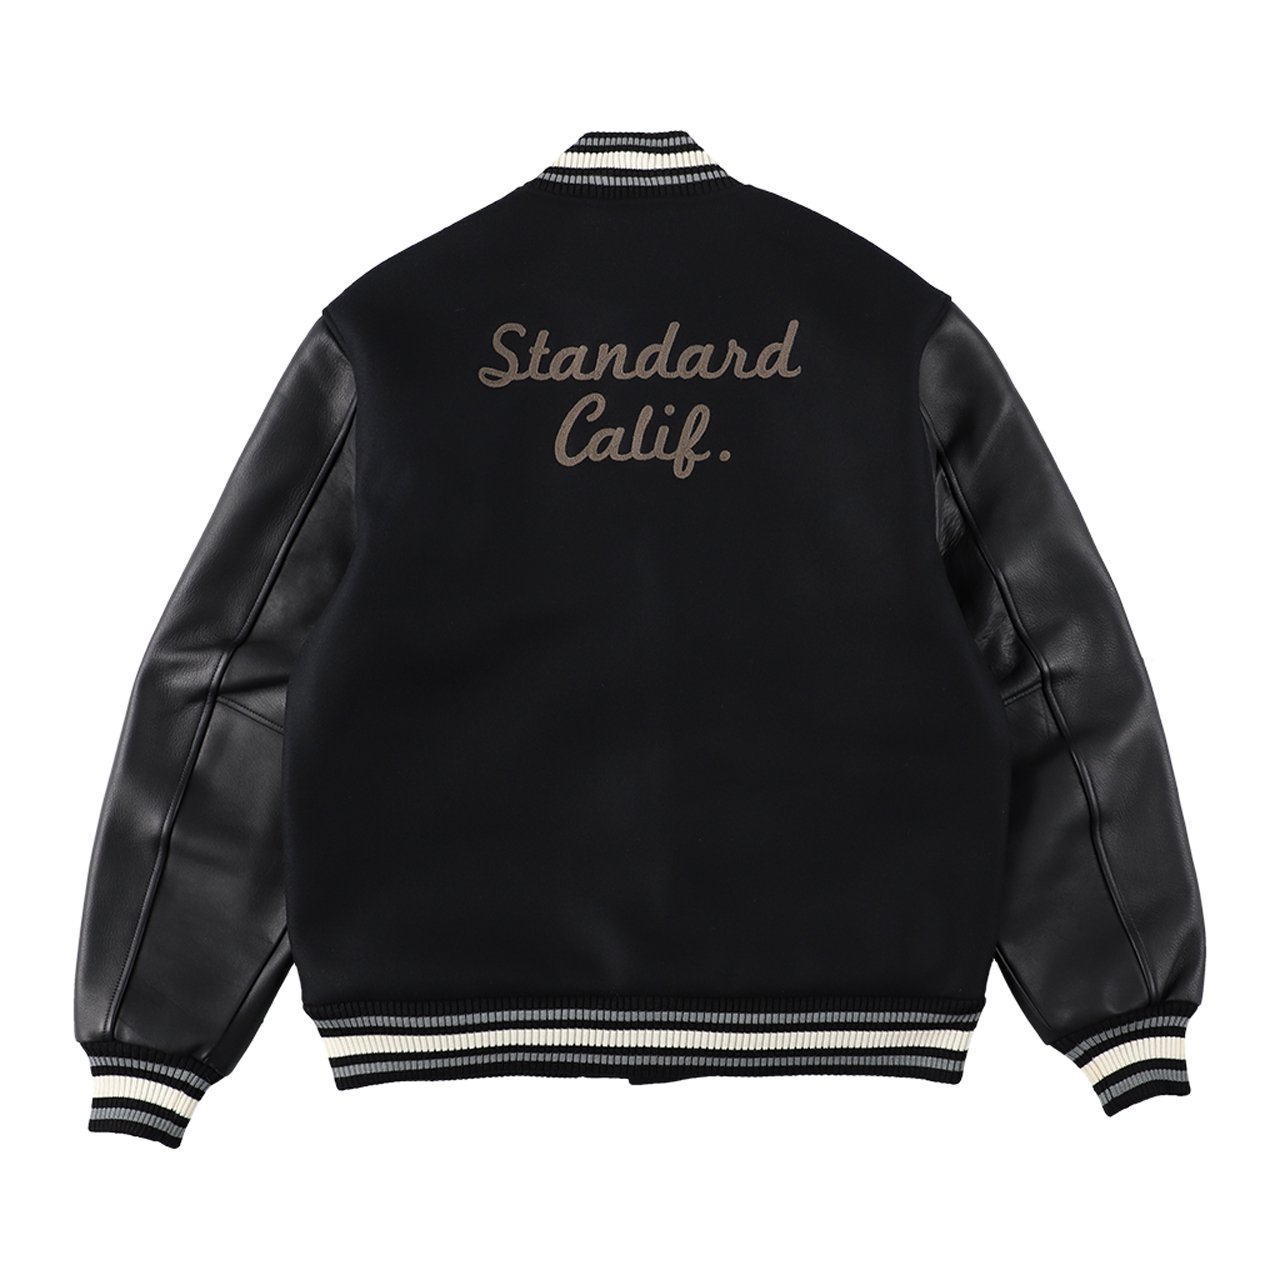 STANDARD CALIFORNIA (スタンダード カリフォルニア)23fw/秋冬
Varsity Jacket Black
刺繡あり
